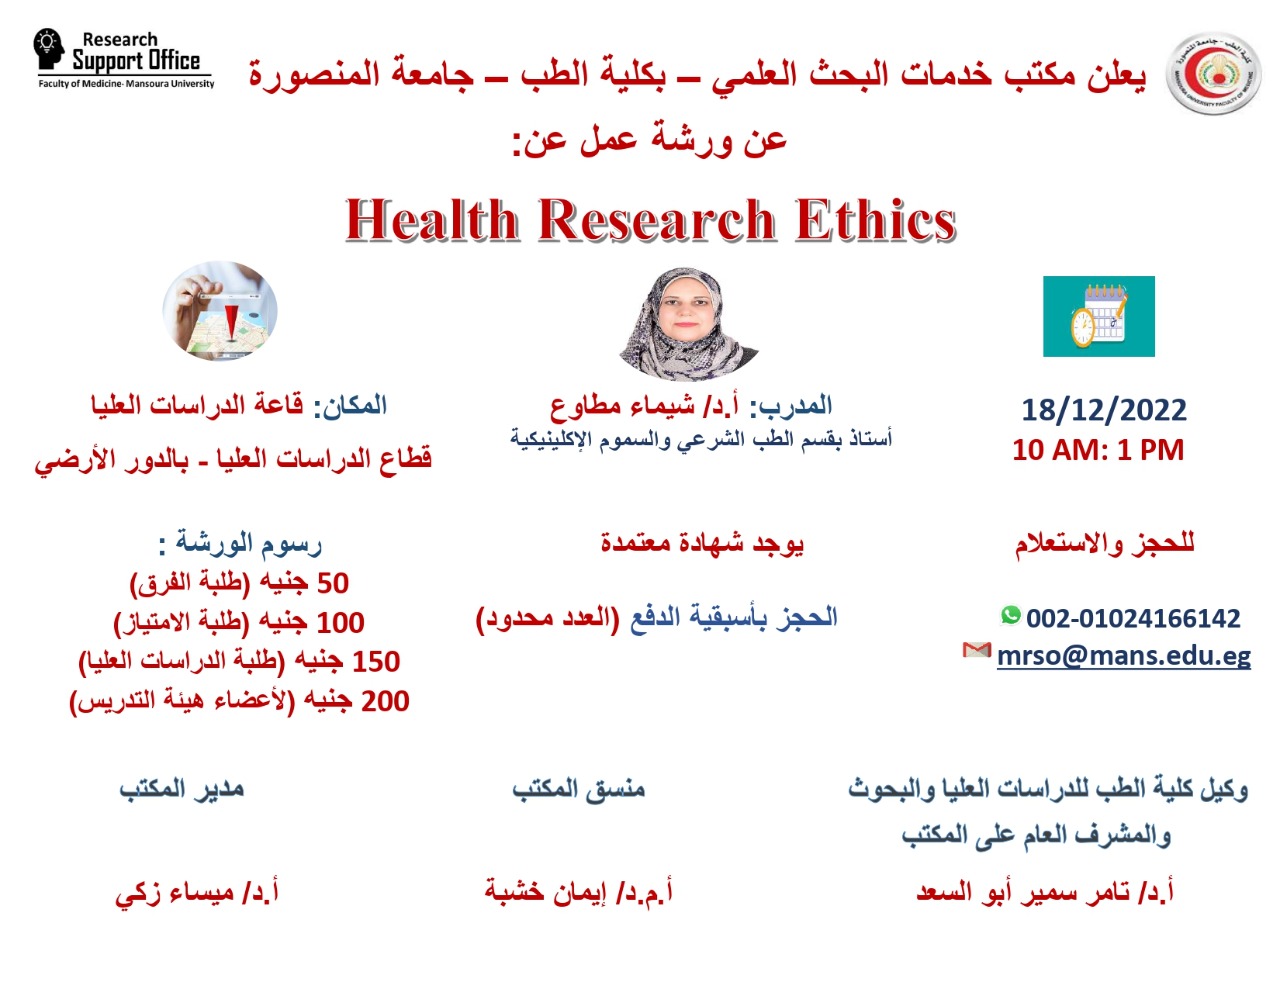  ورشة عمل بعنوان Health Research Ethics  بكلية الطب